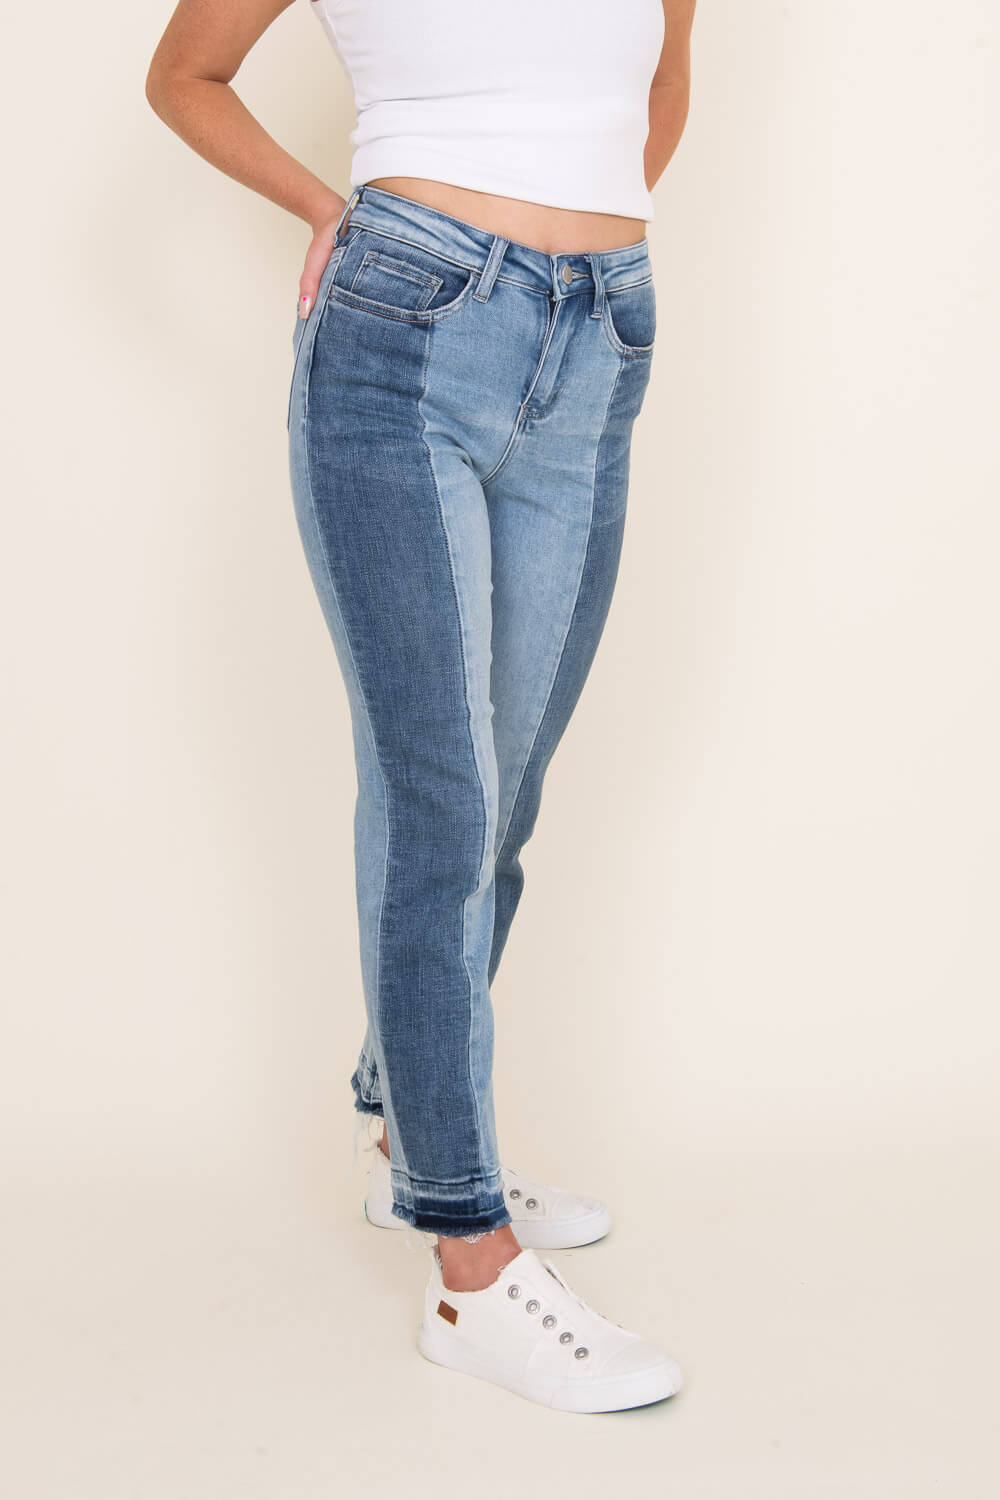 Buy Women Navy Regular Fit Mid Wash Jeans Online - 733006 | Allen Solly